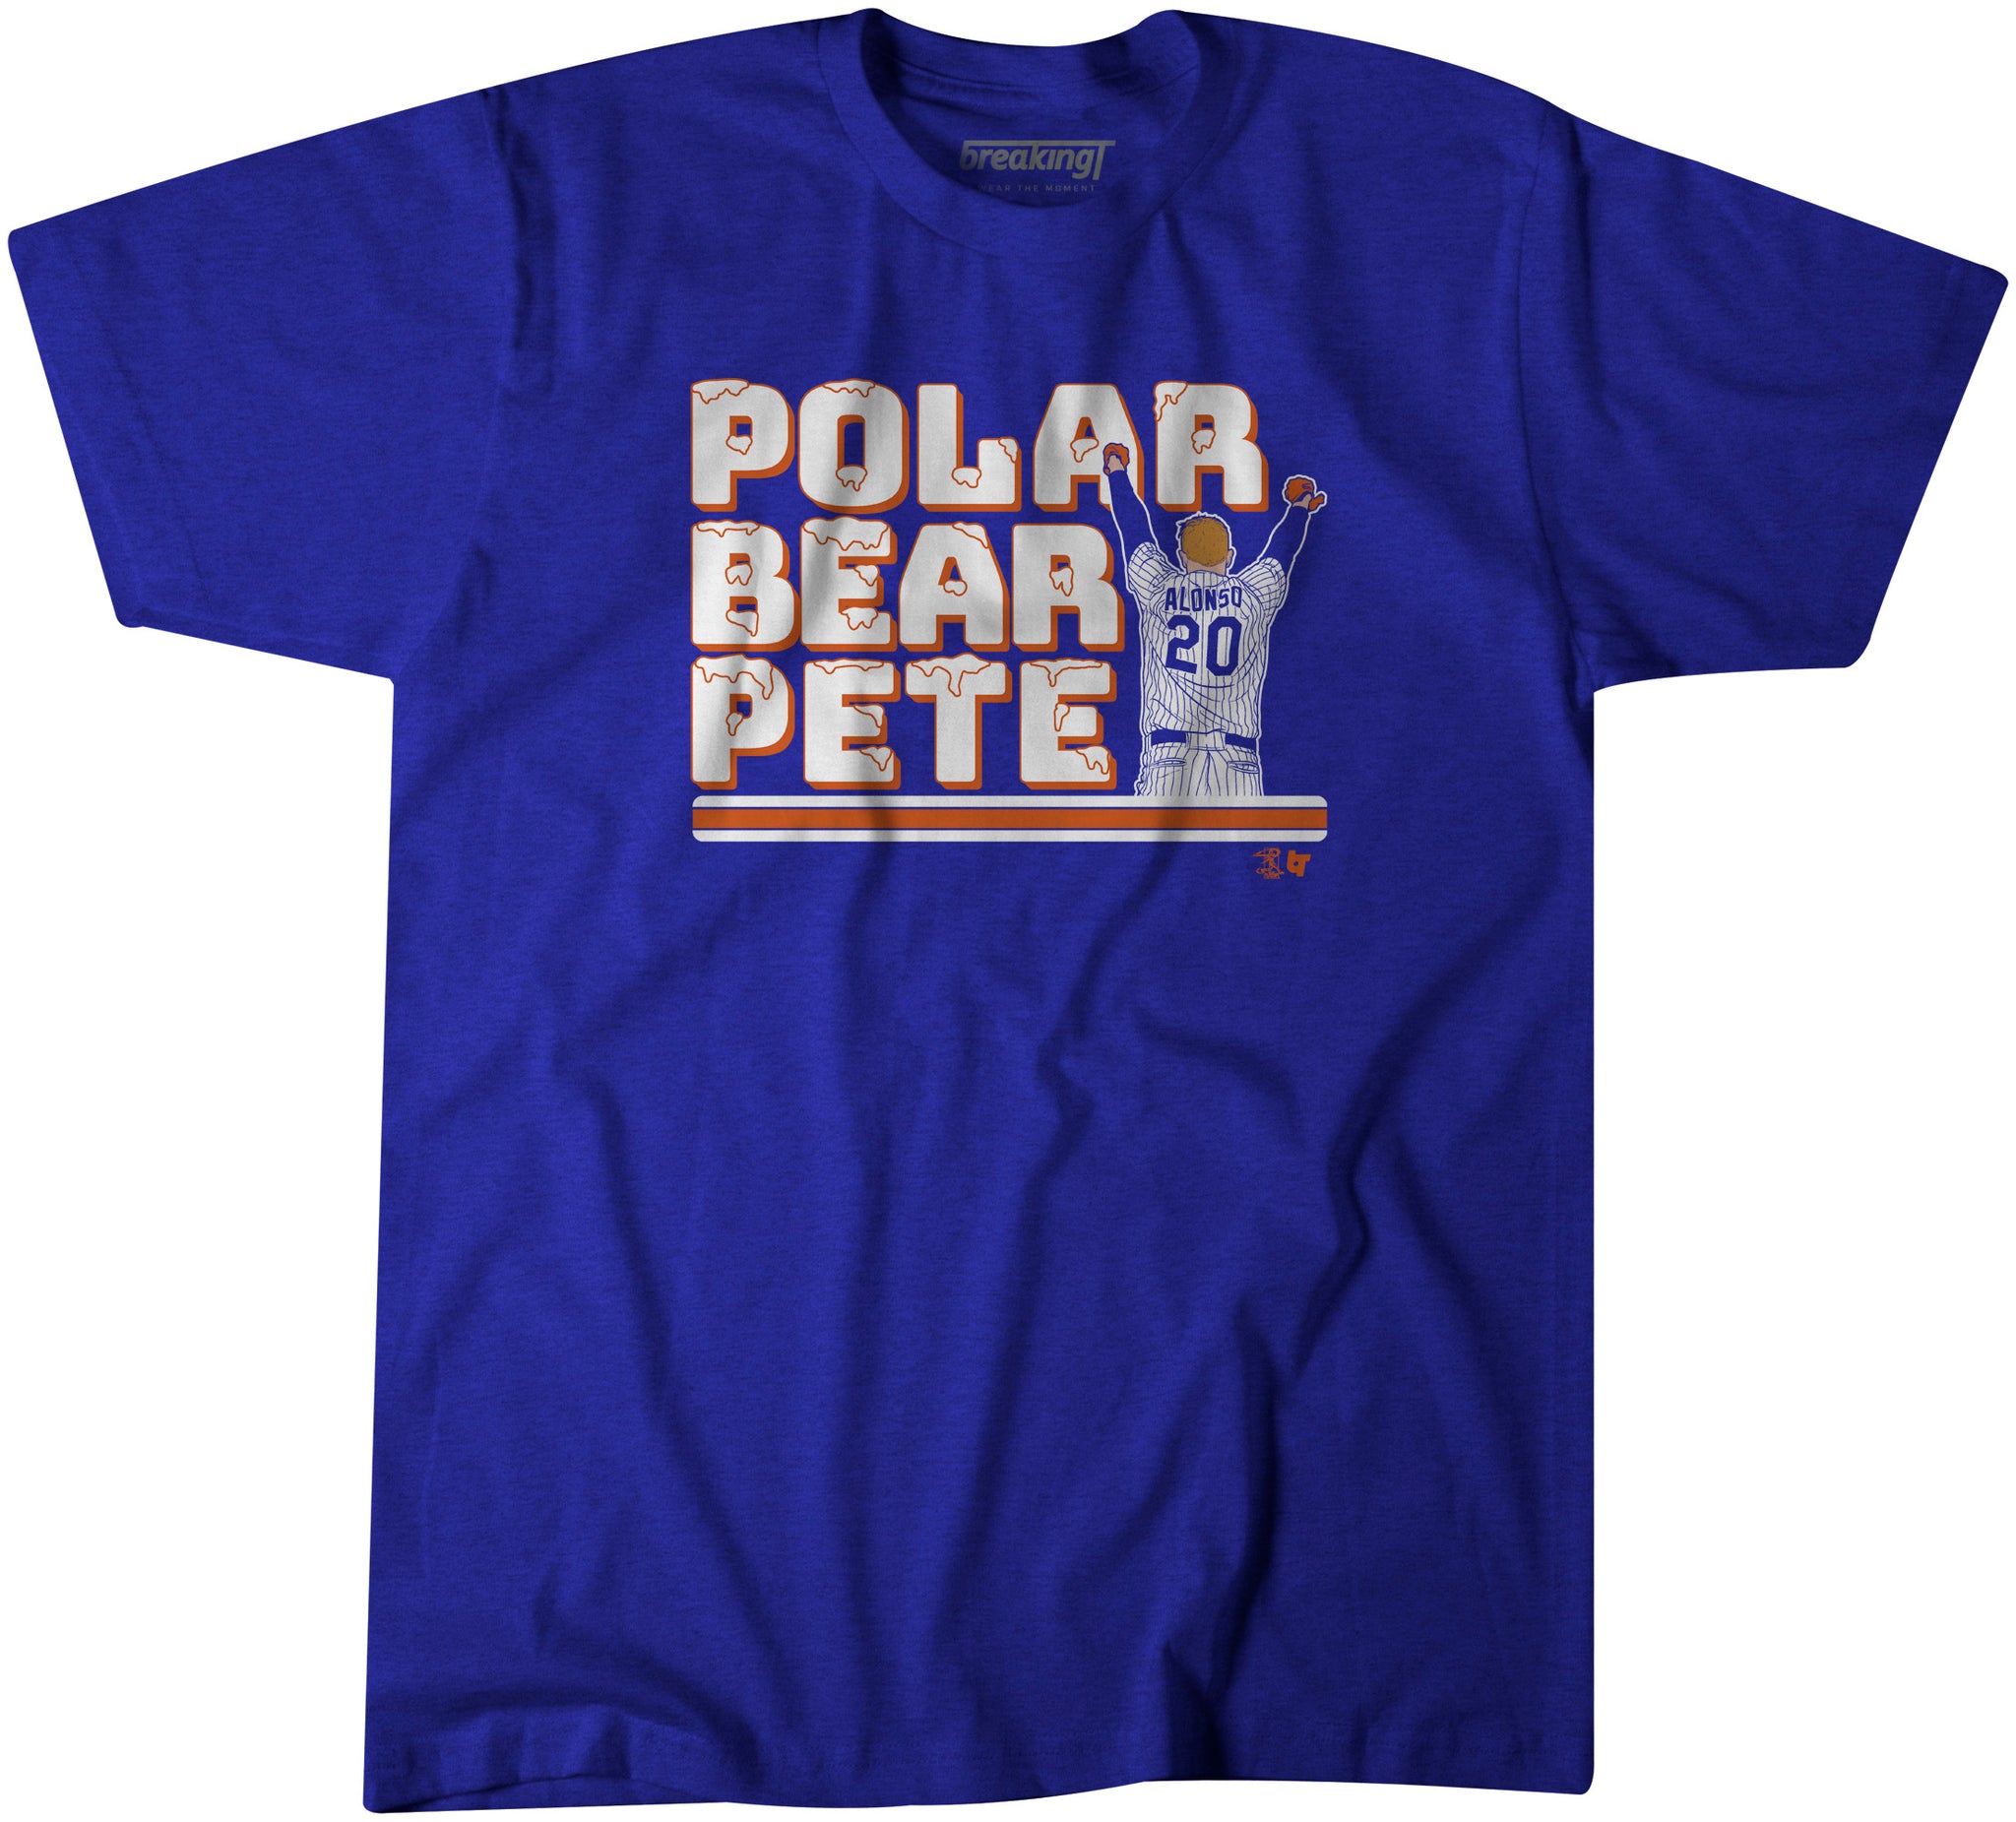 polar bear pete alonso shirt